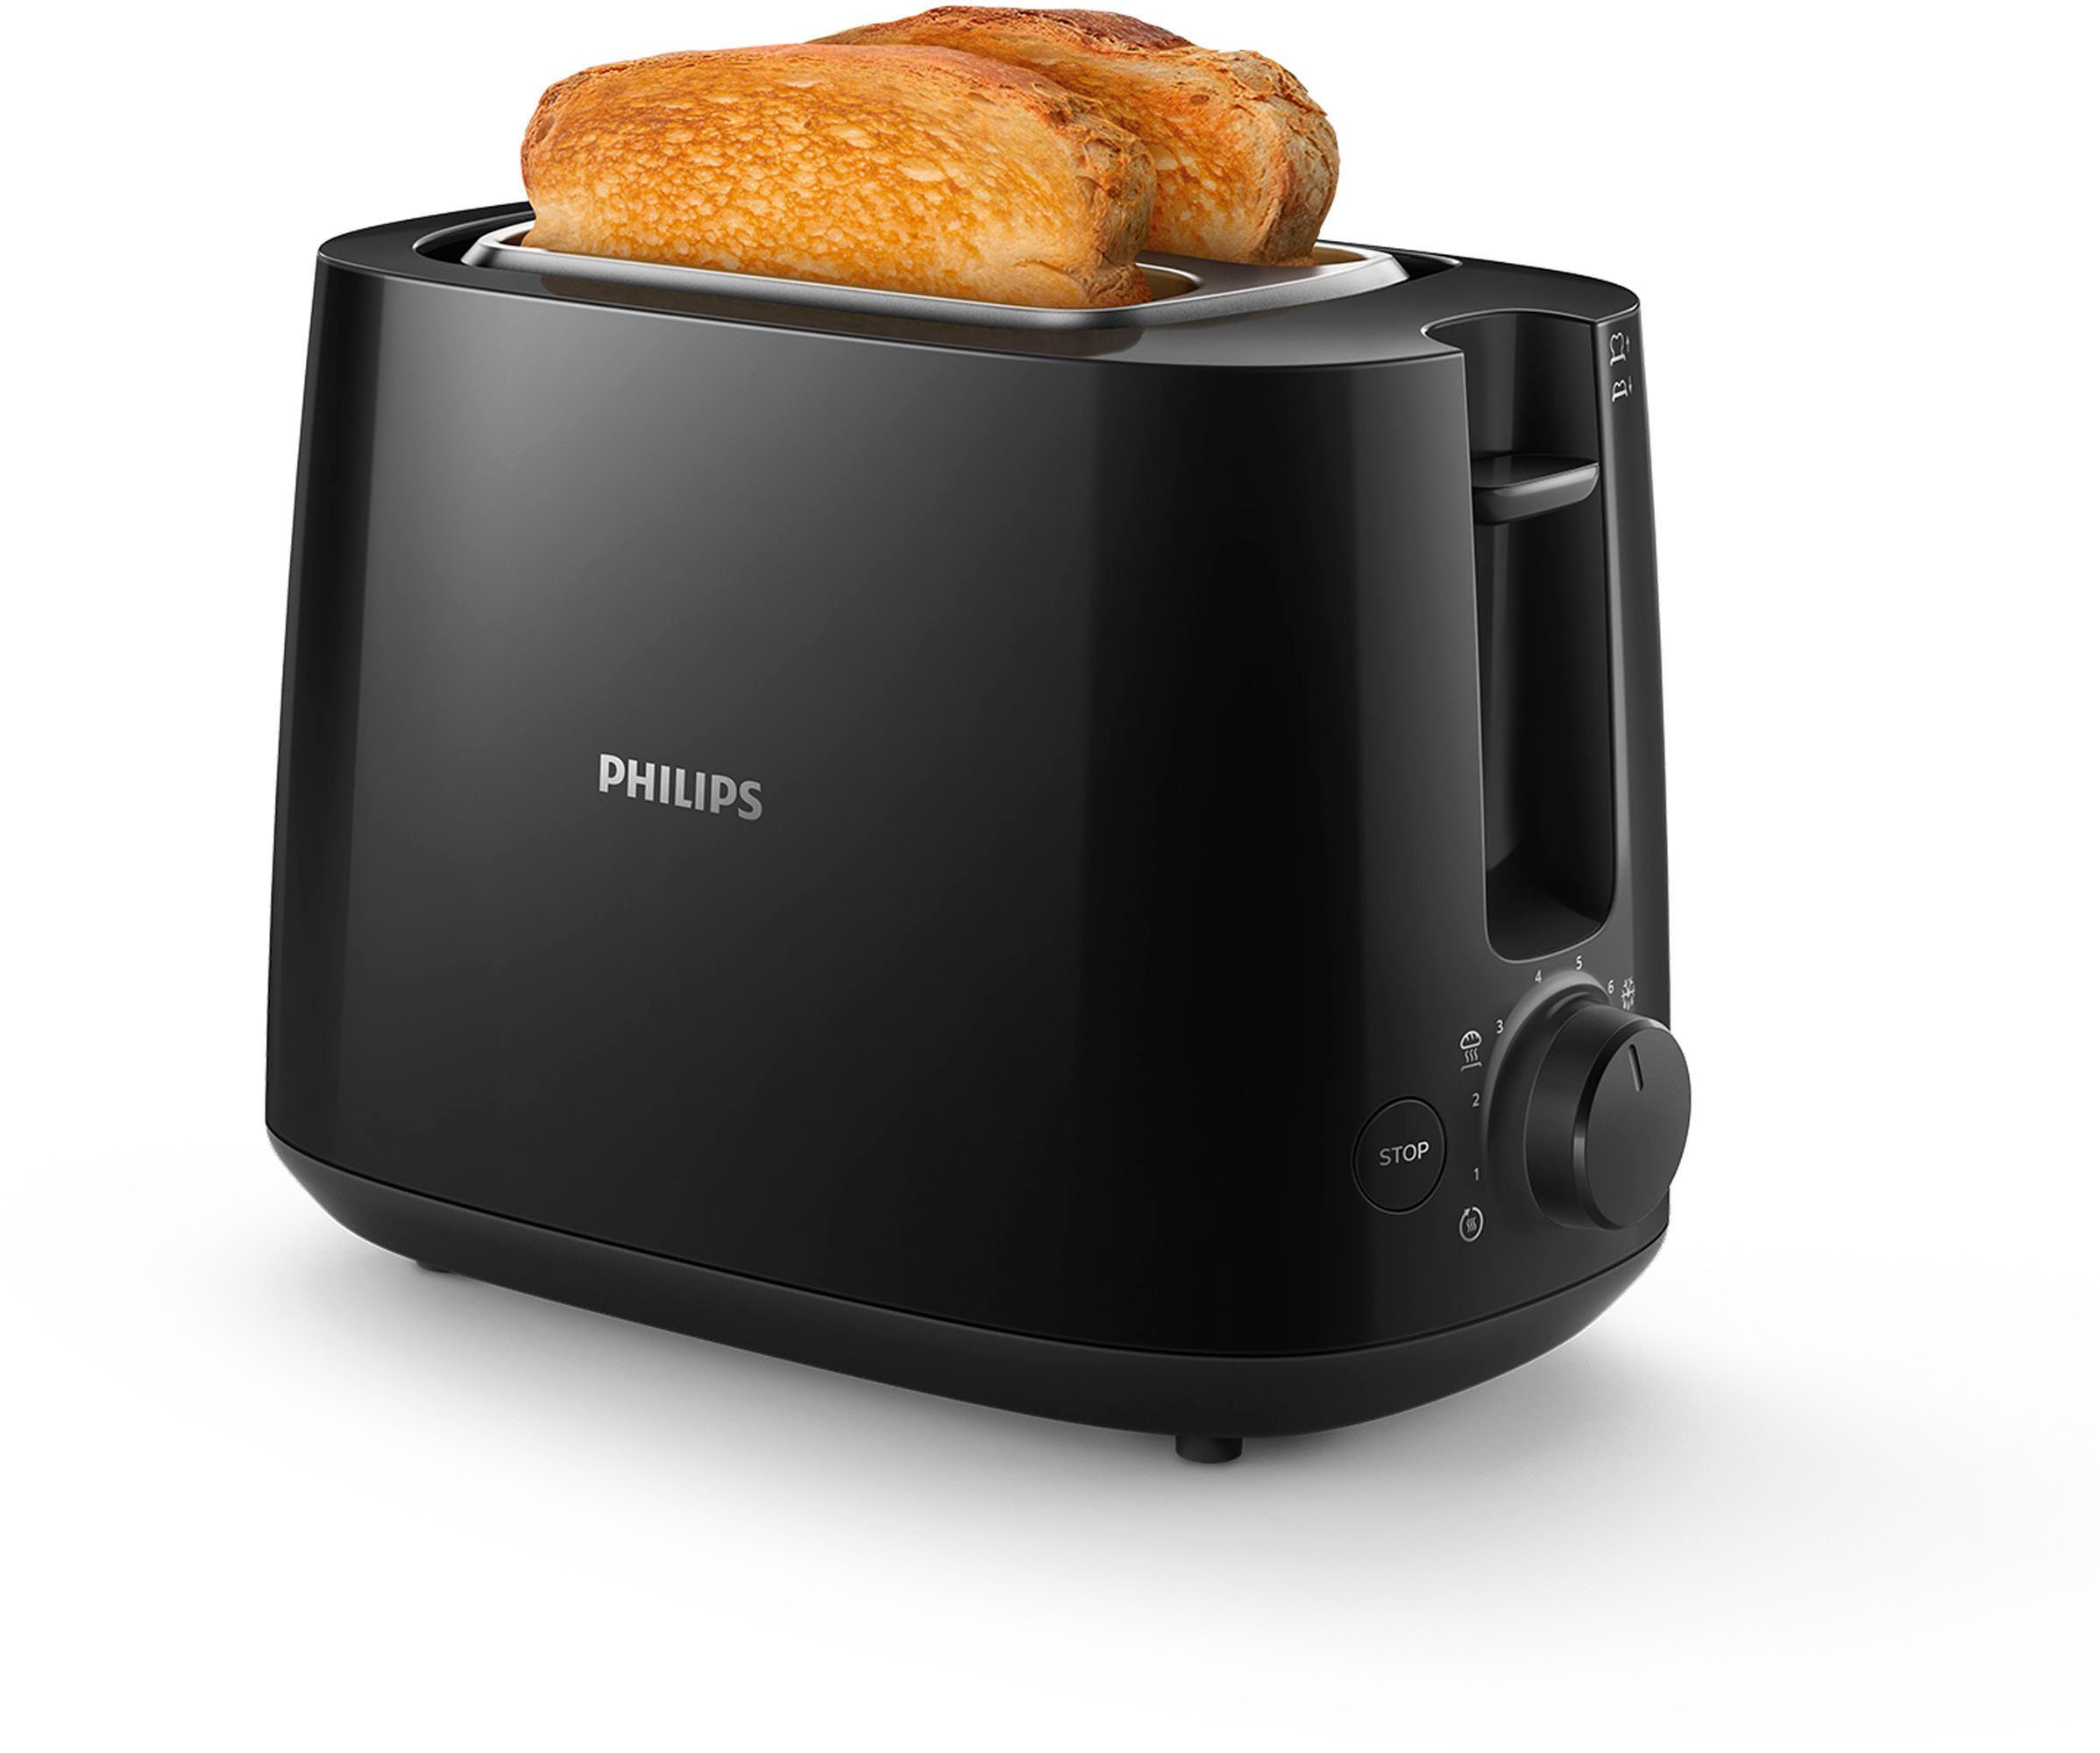 Philips Toaster HD2581/90 Daily 830 Collection, integrierter Schlitze, kurze 8 schwarz Bräunungsstufen, 2 Brötchenaufsatz, W